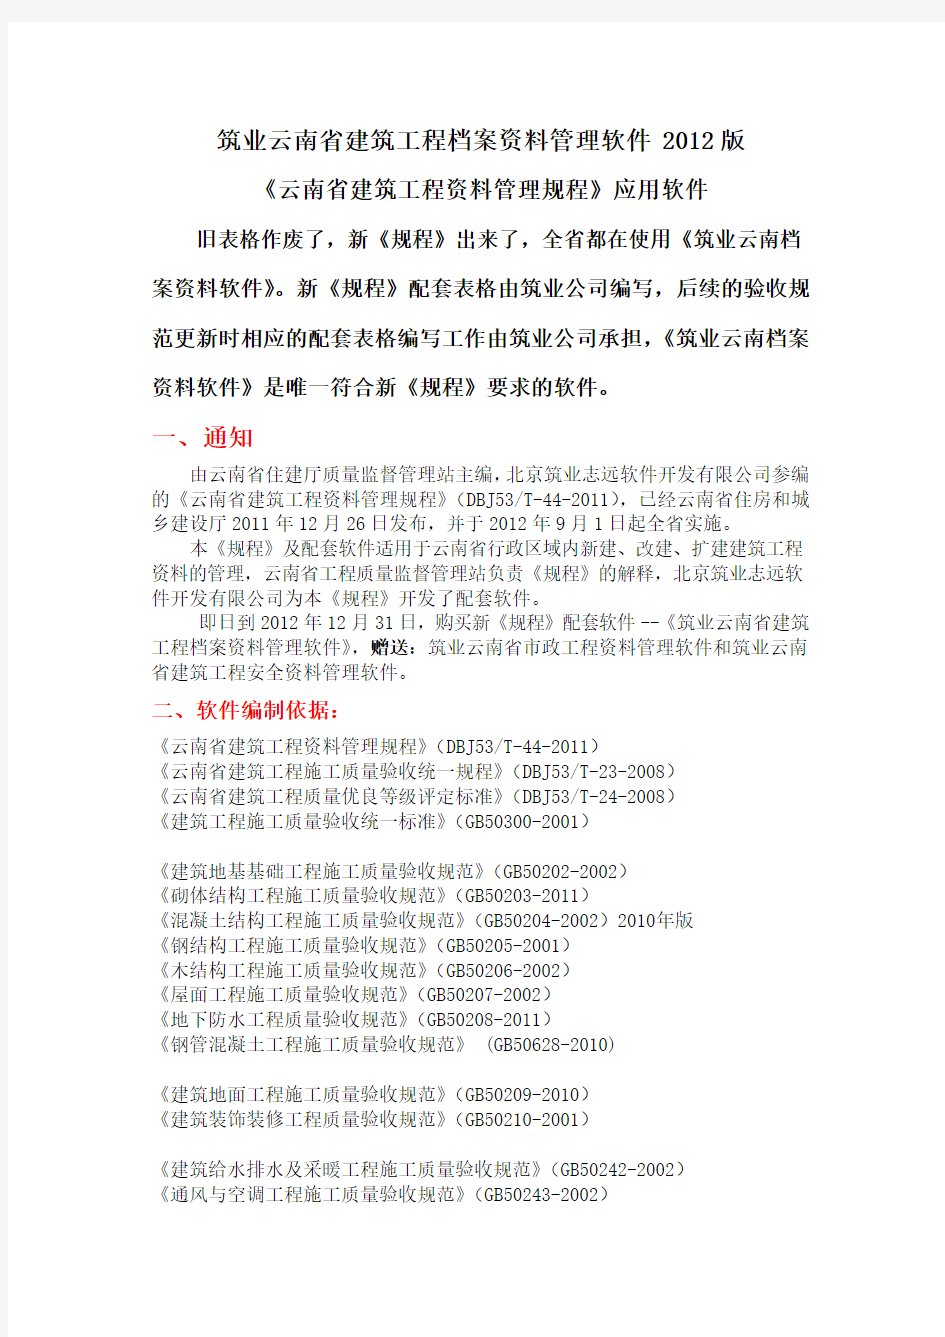 云南省建筑工程档案资料管理软件